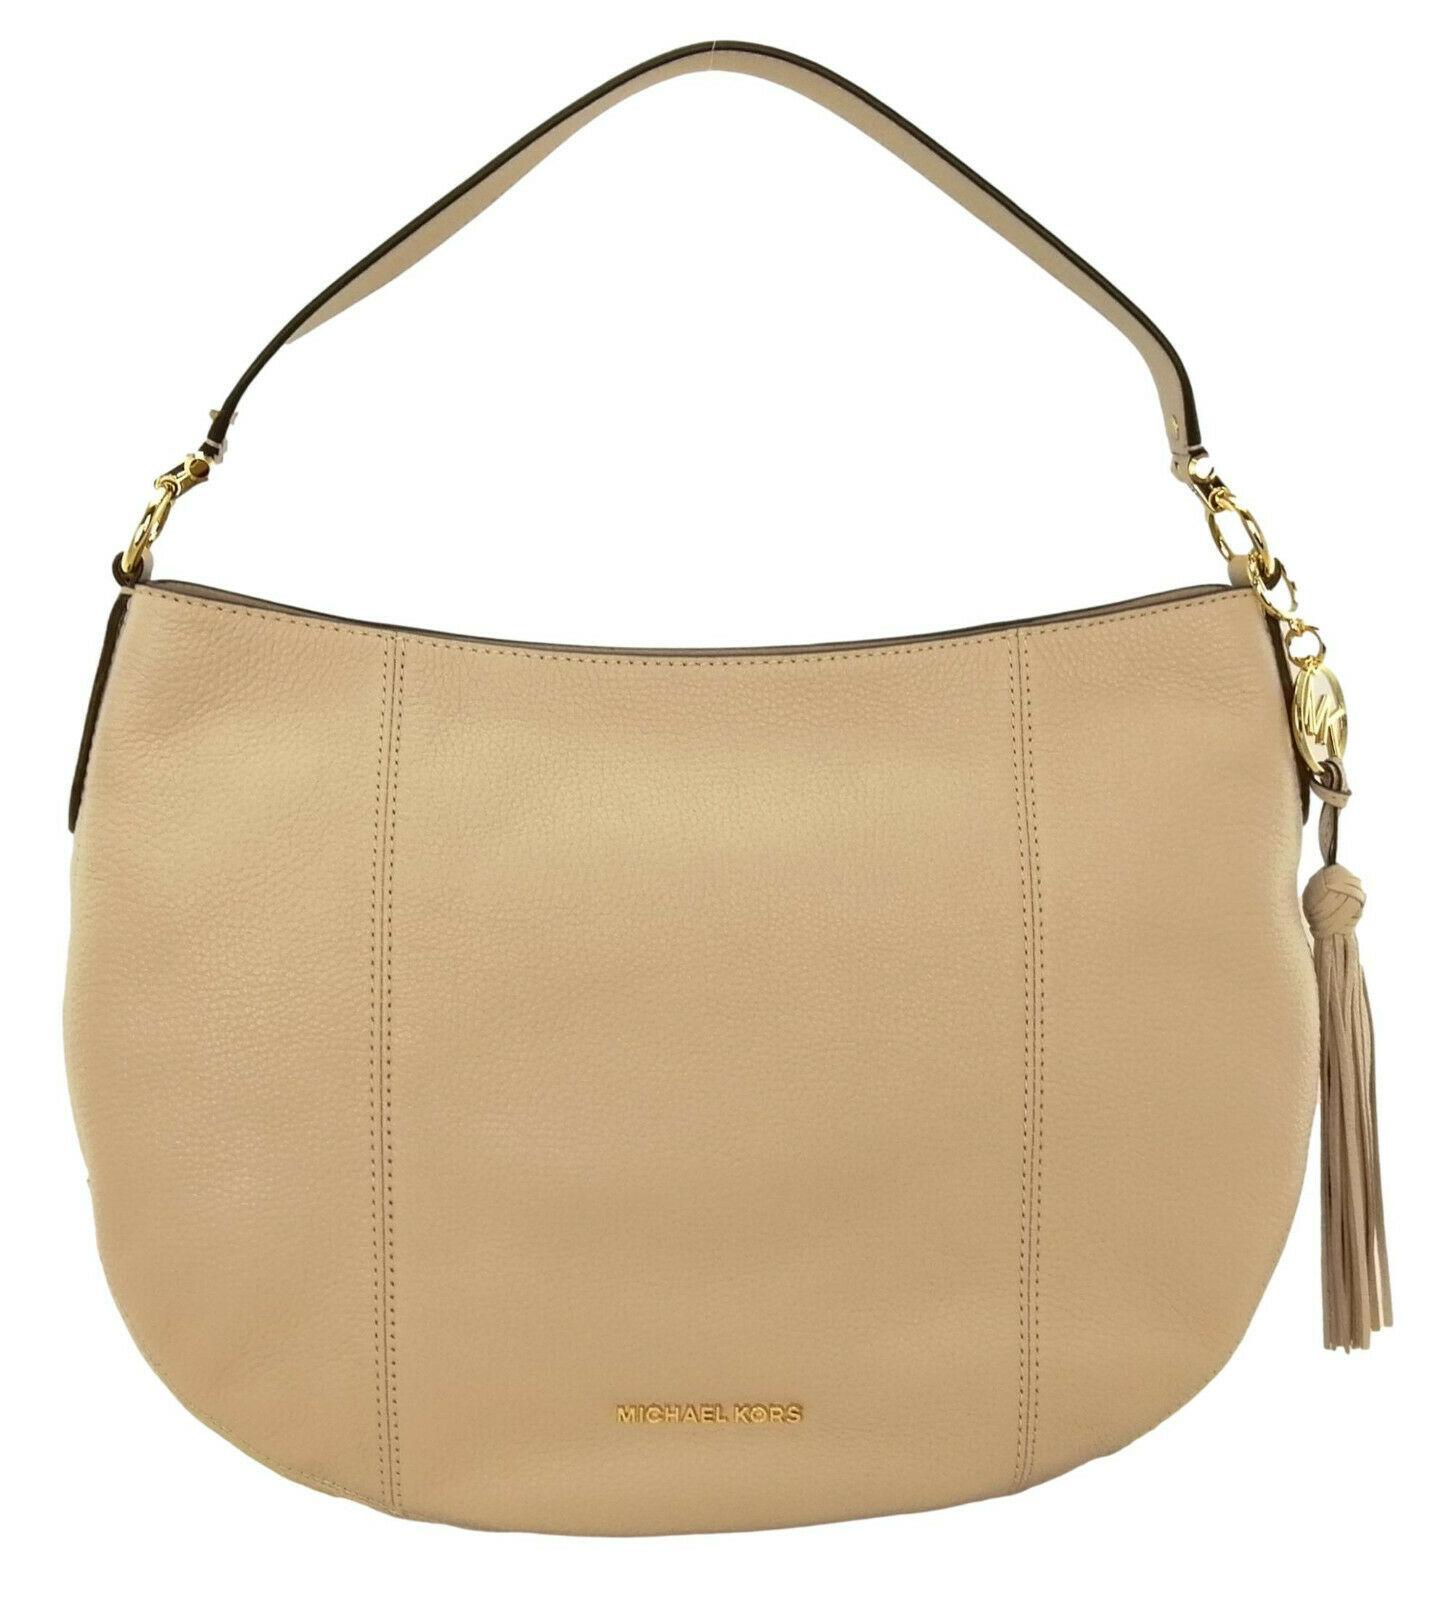 Michael Kors Shoulder Bag Soft Pink Large Brooke Handbag Pebbled Leather